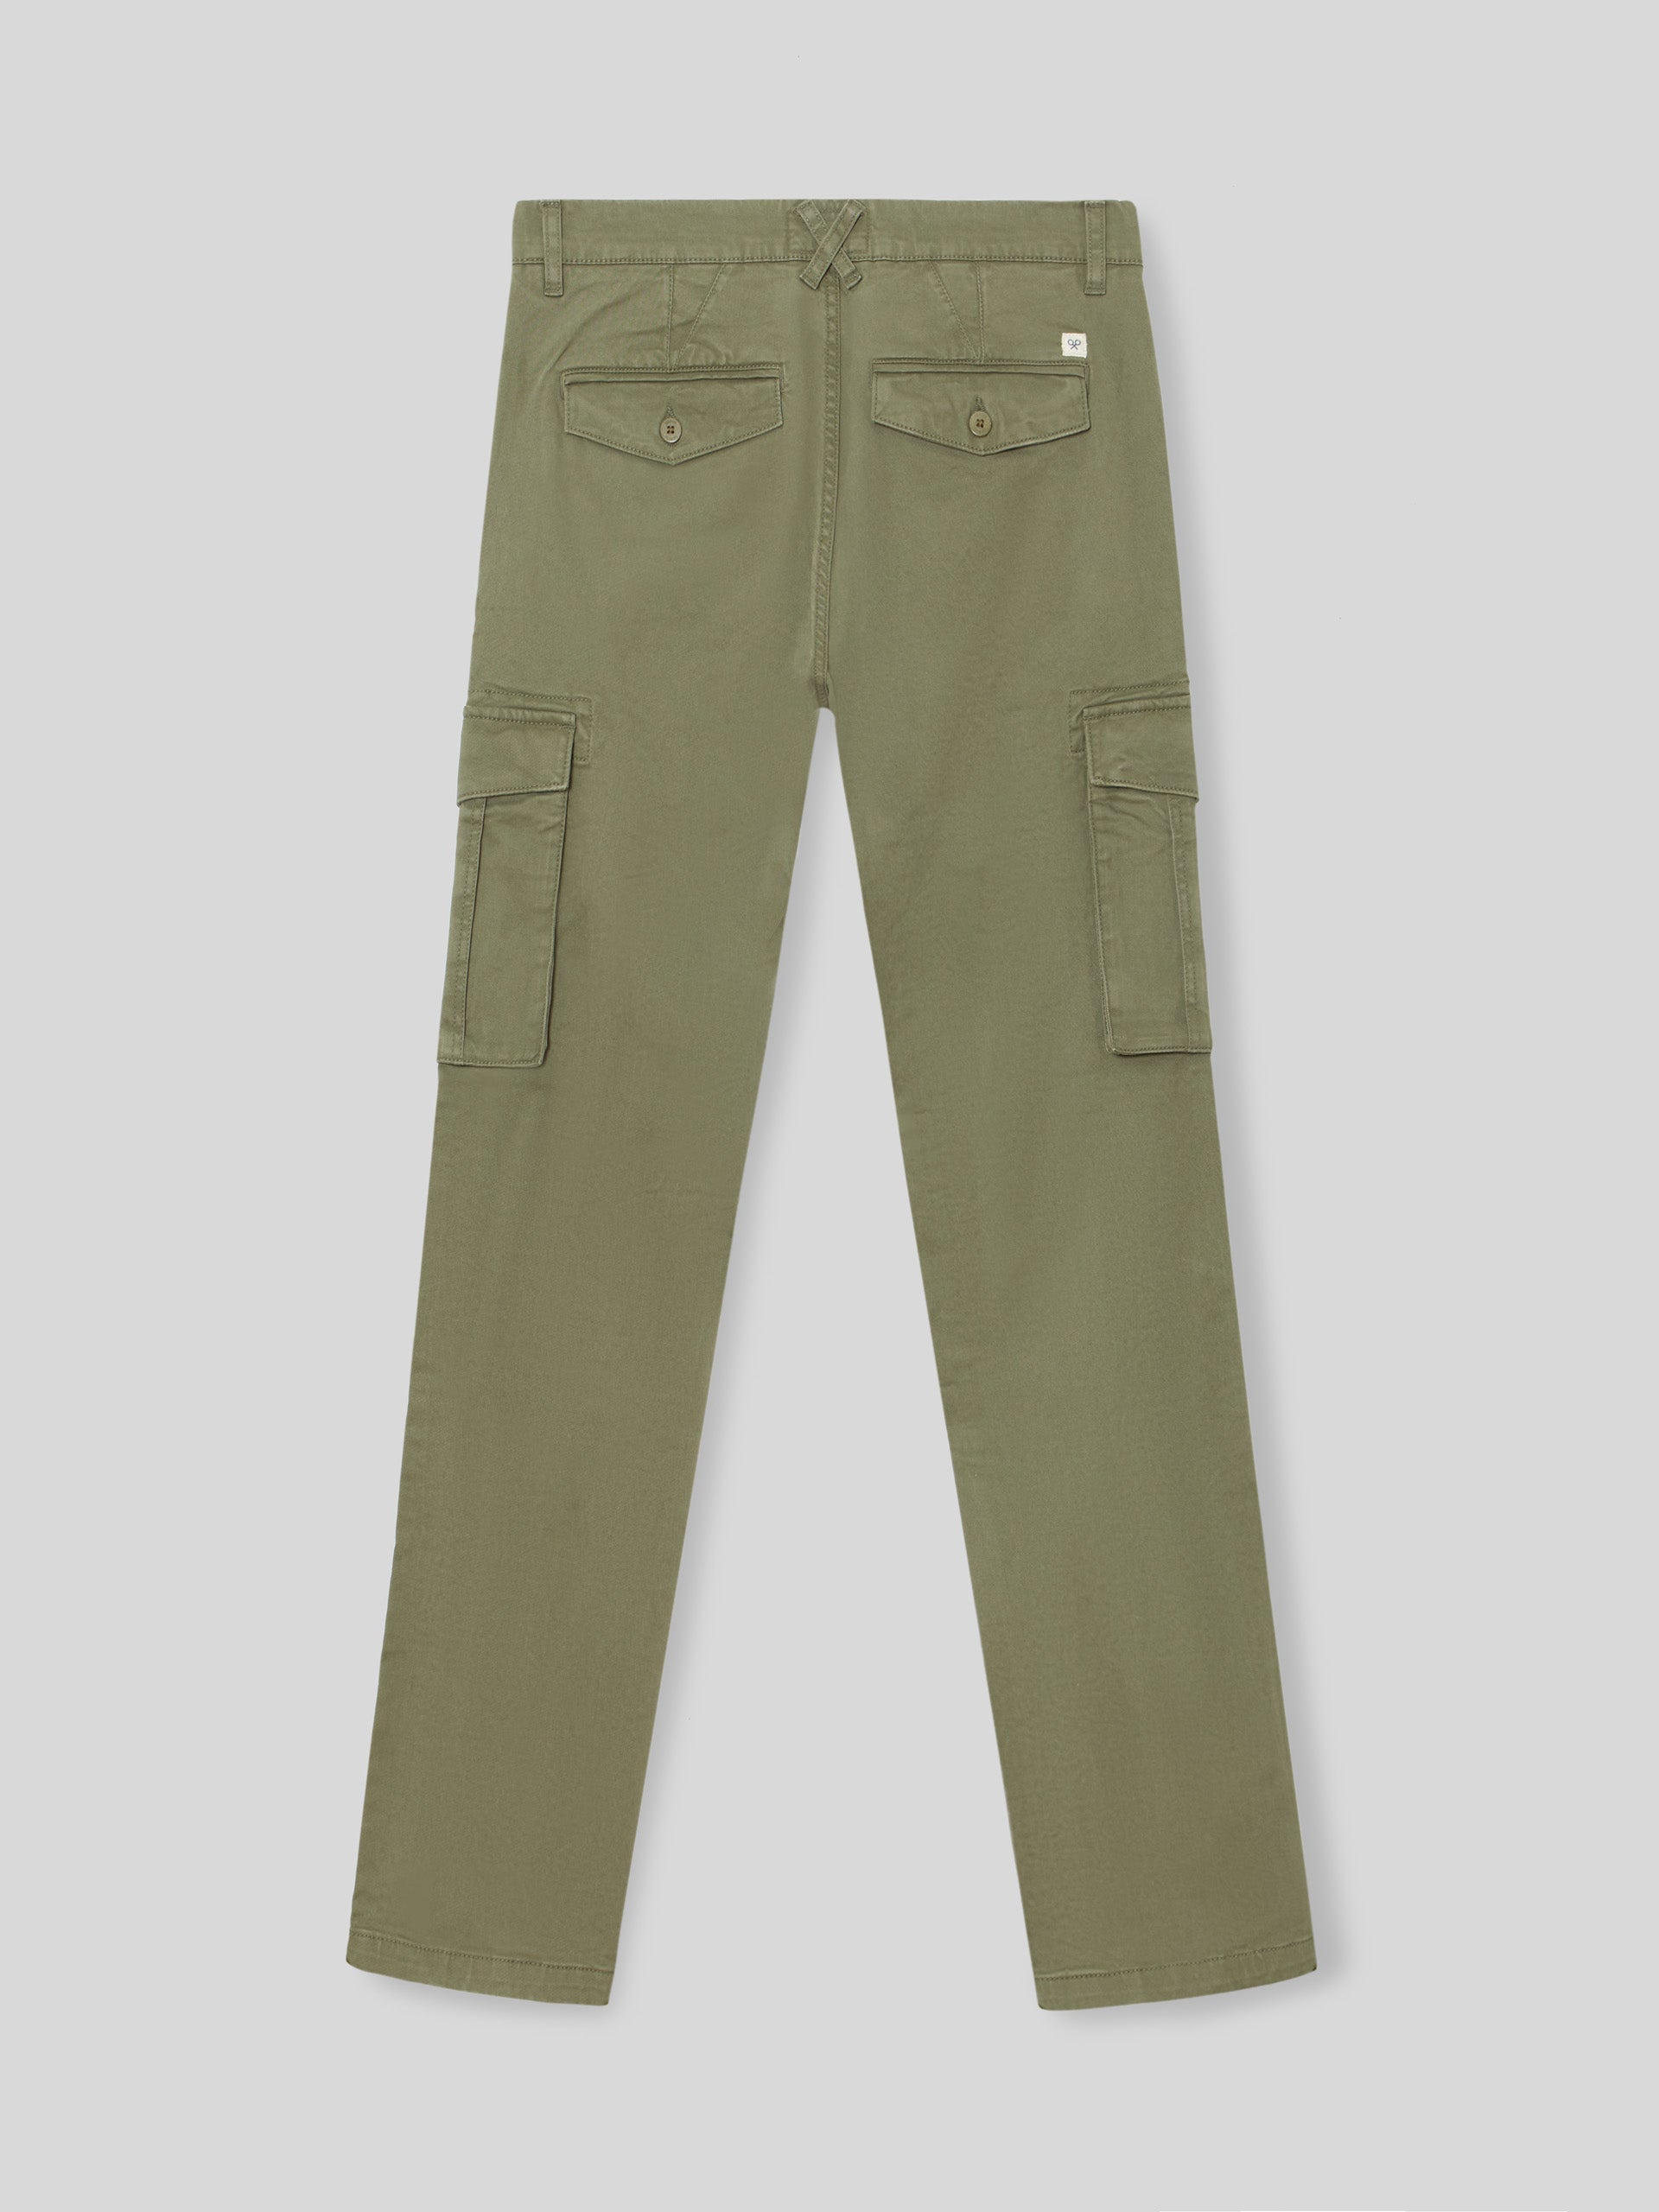 Khaki cargo sport pants